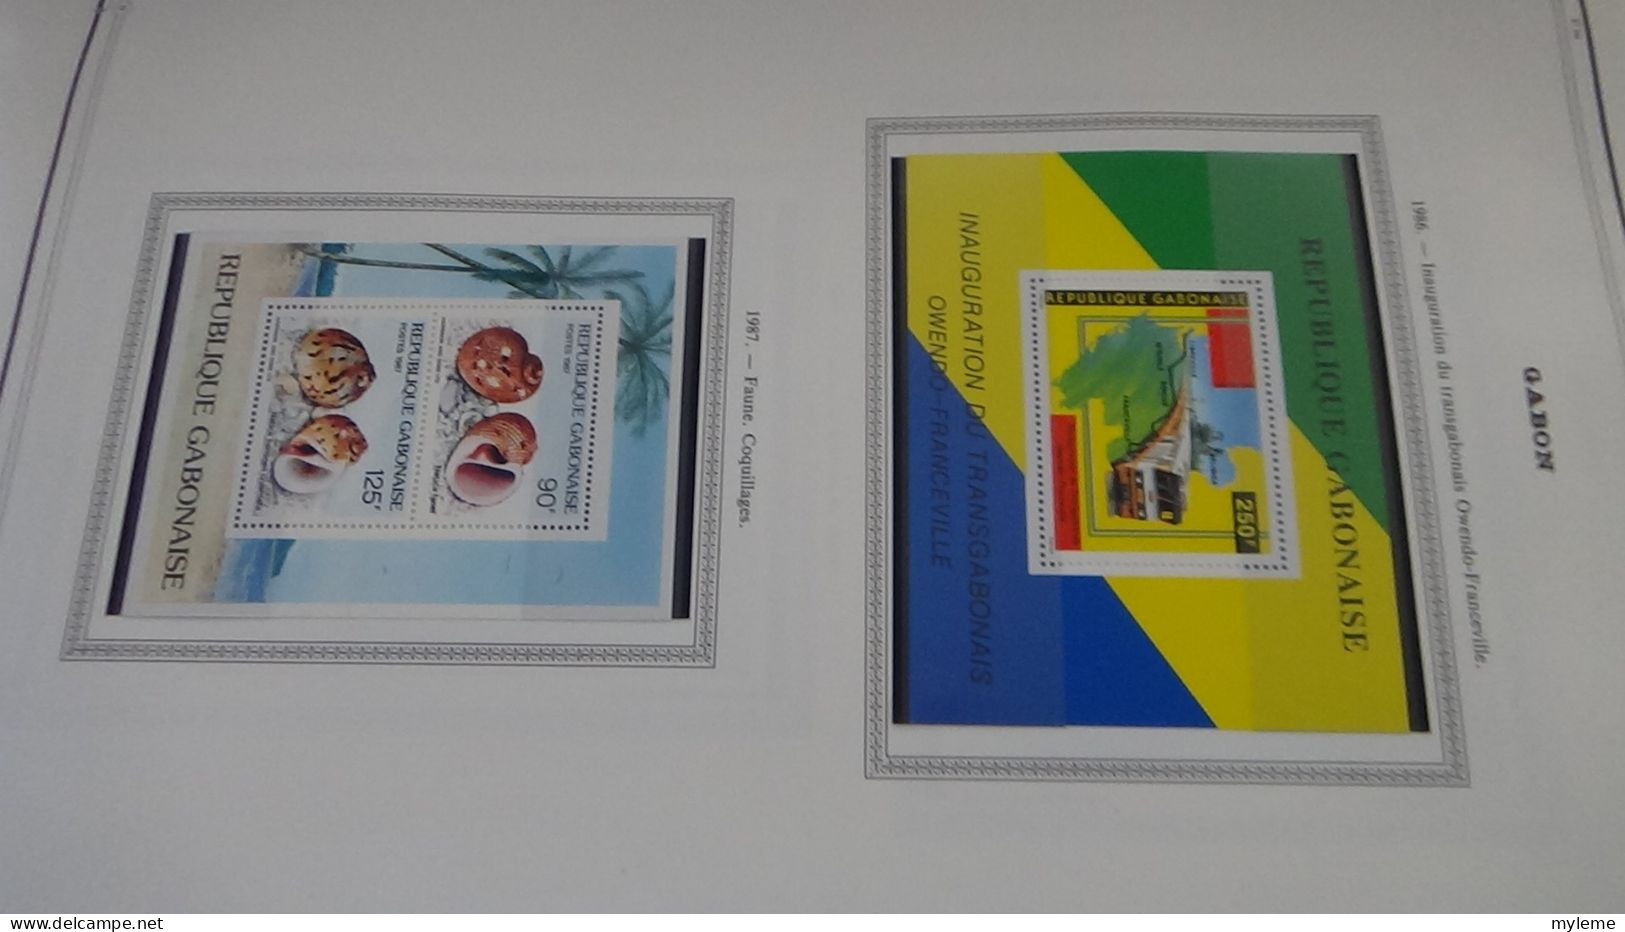 BC102 Collection de timbres et blocs ** du Gabon sur feuille d'album.  A saisir !!!